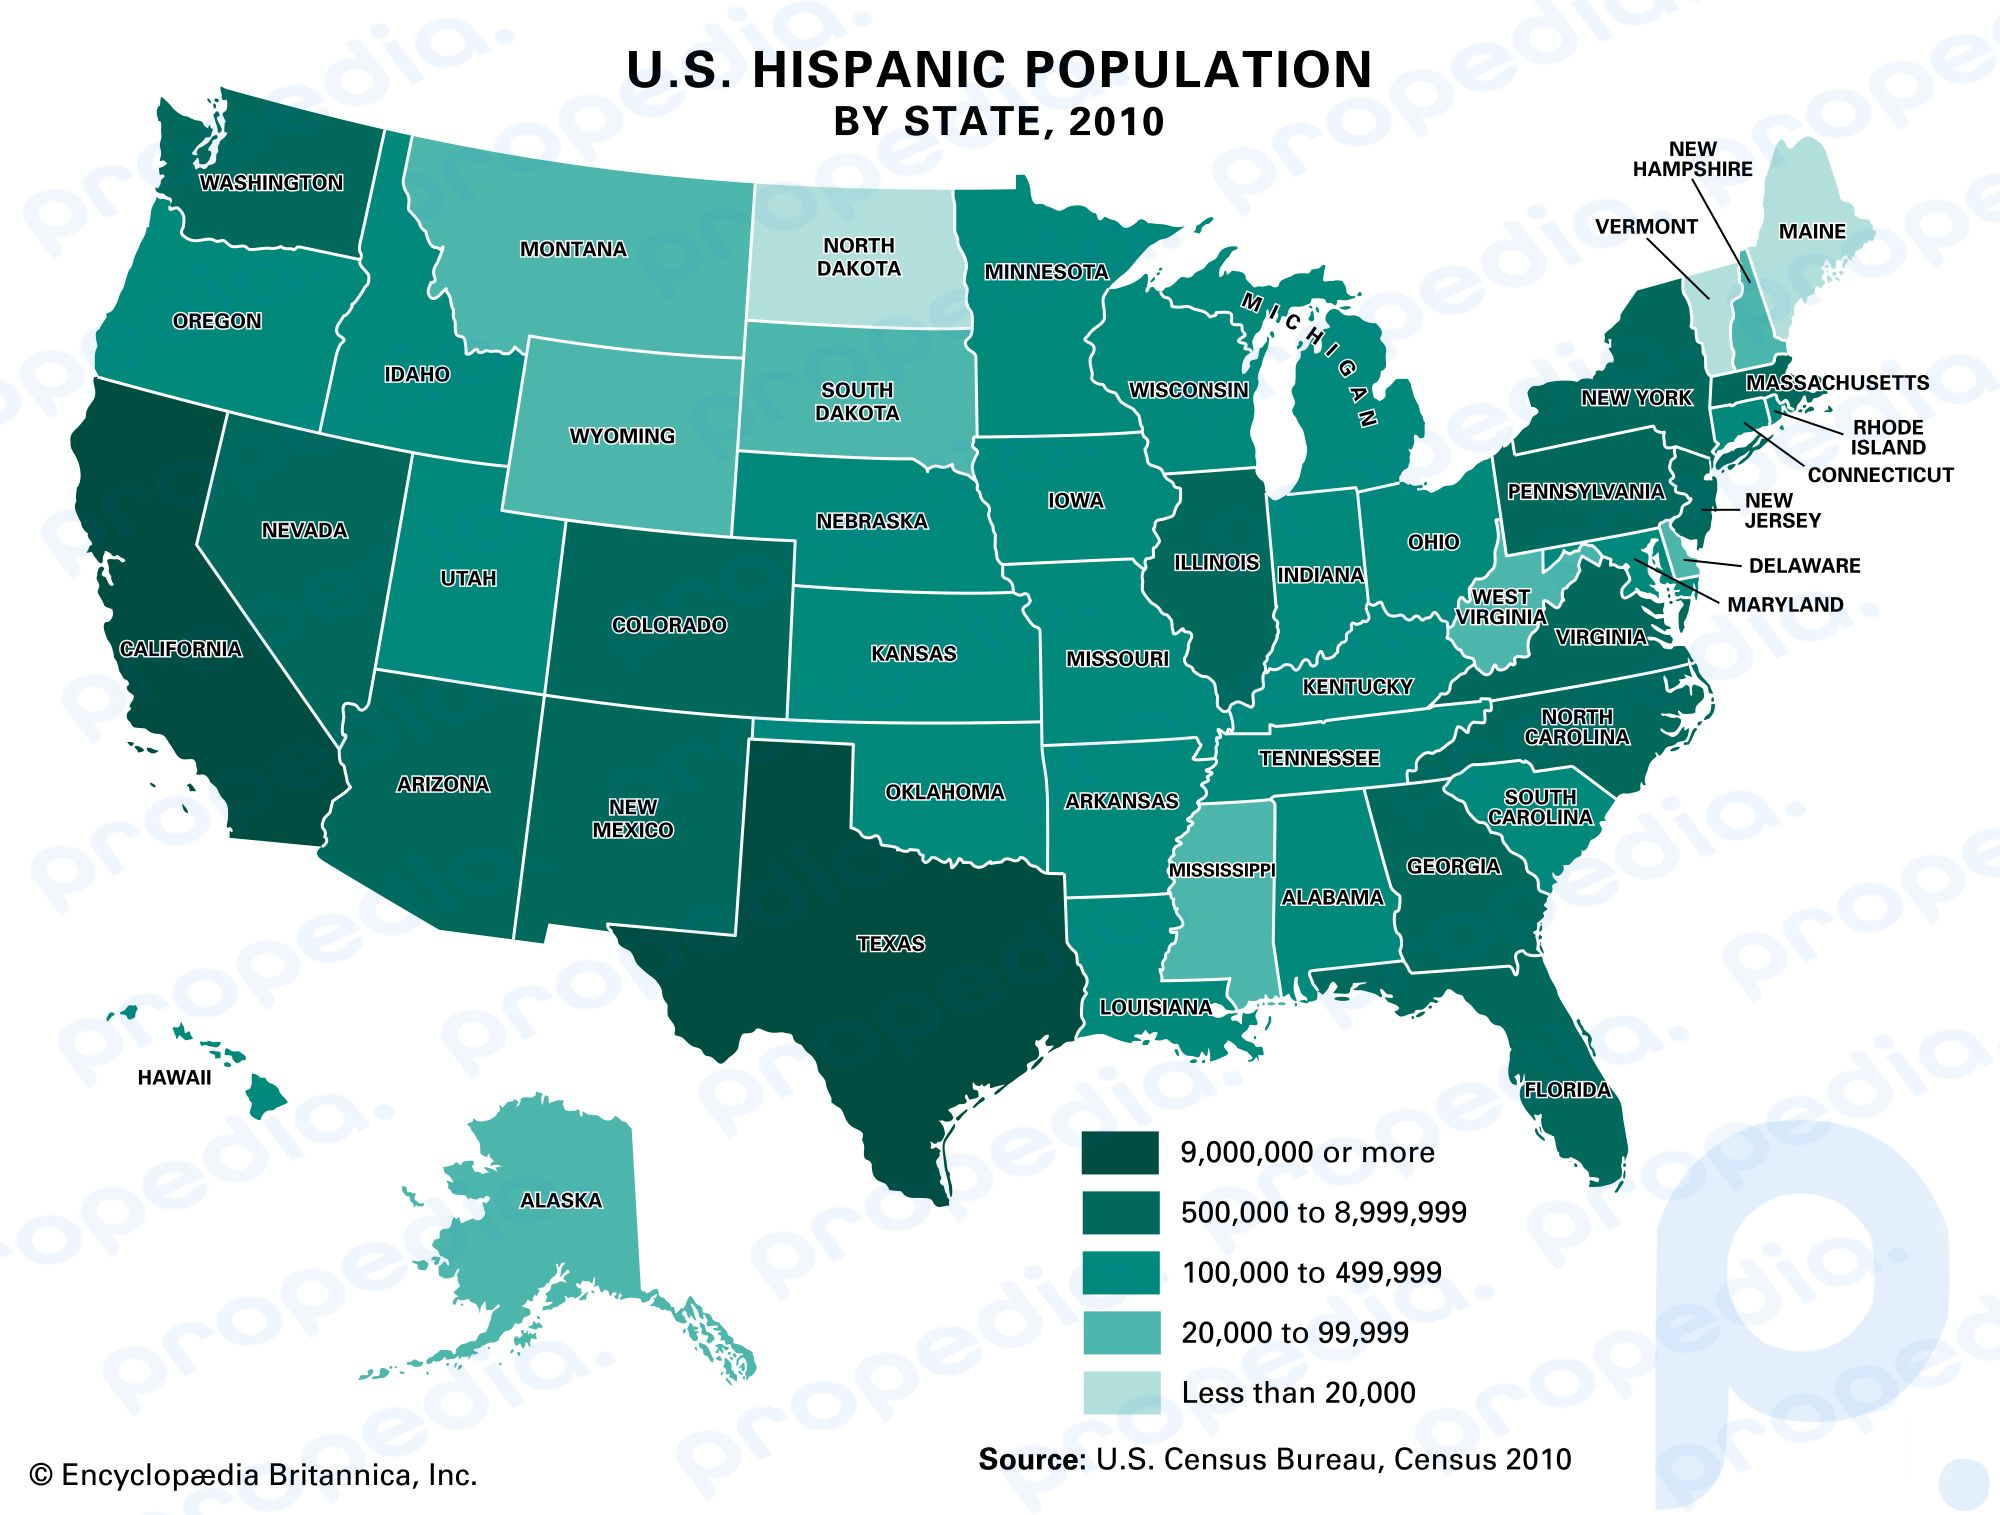 米国の州別ヒスパニック系人口、2010 年